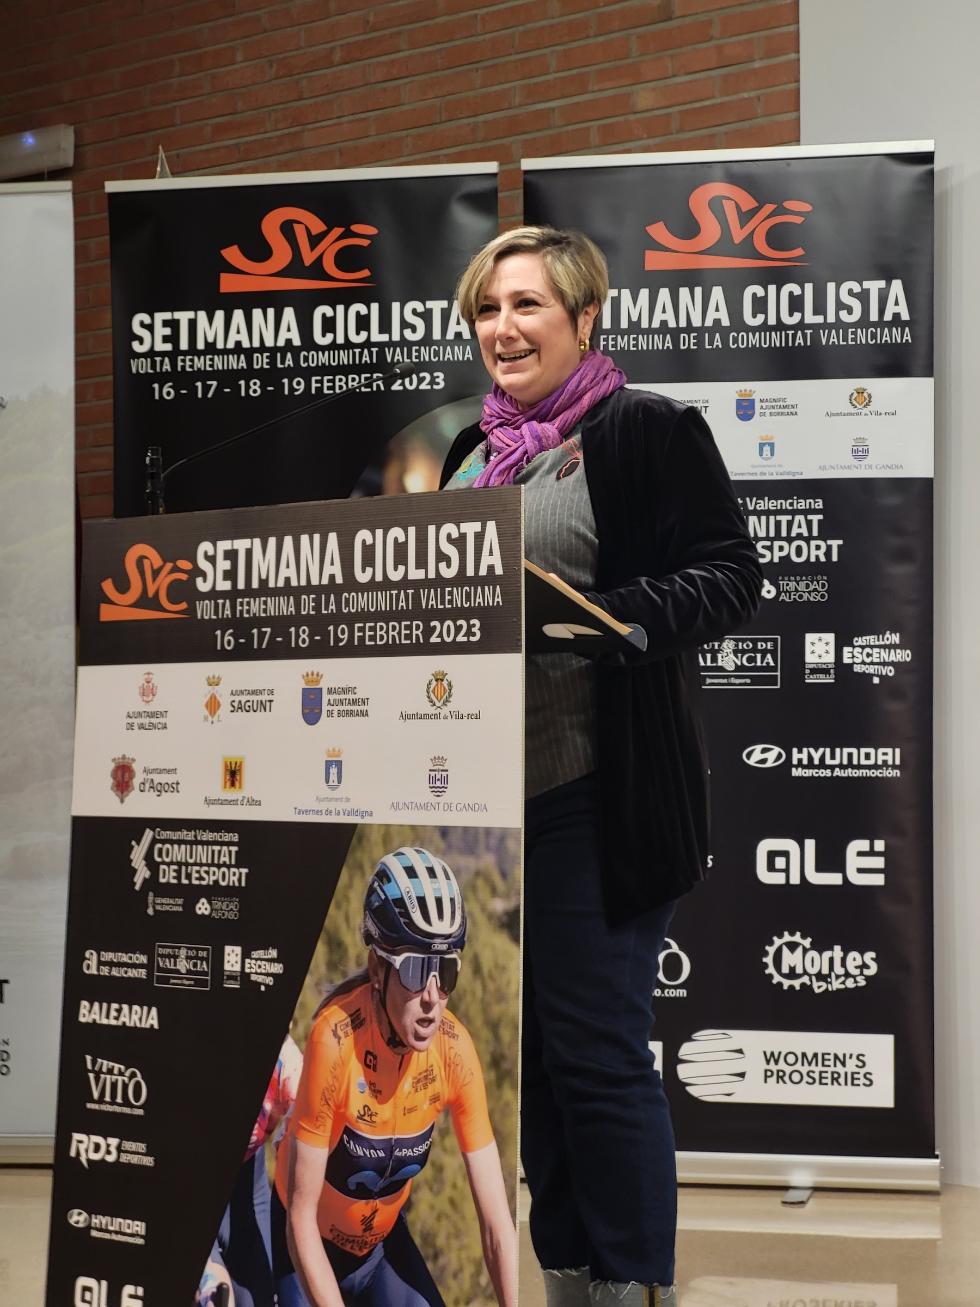 Tamarit: “La Setmana Ciclista valenciana ya es todo un referente internacional del ciclismo femenino”